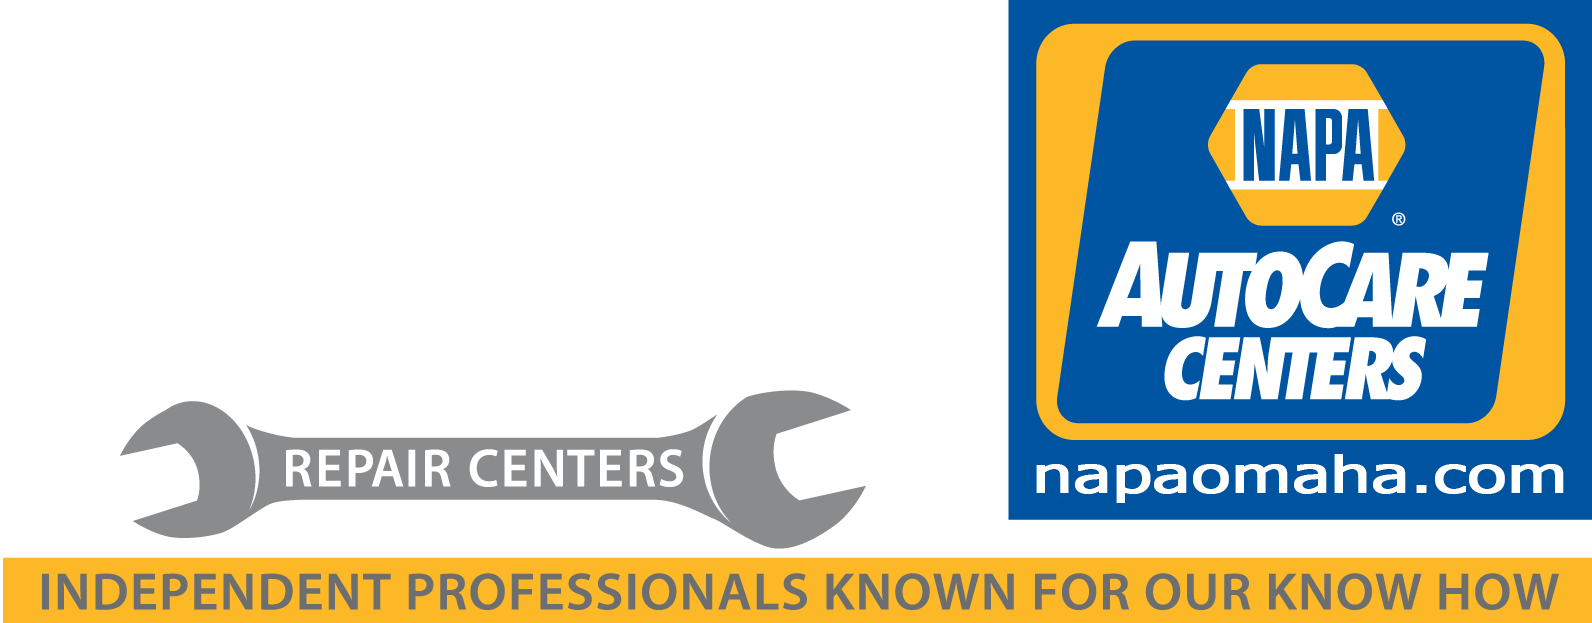 Greater Omaha Repair Centers BDG